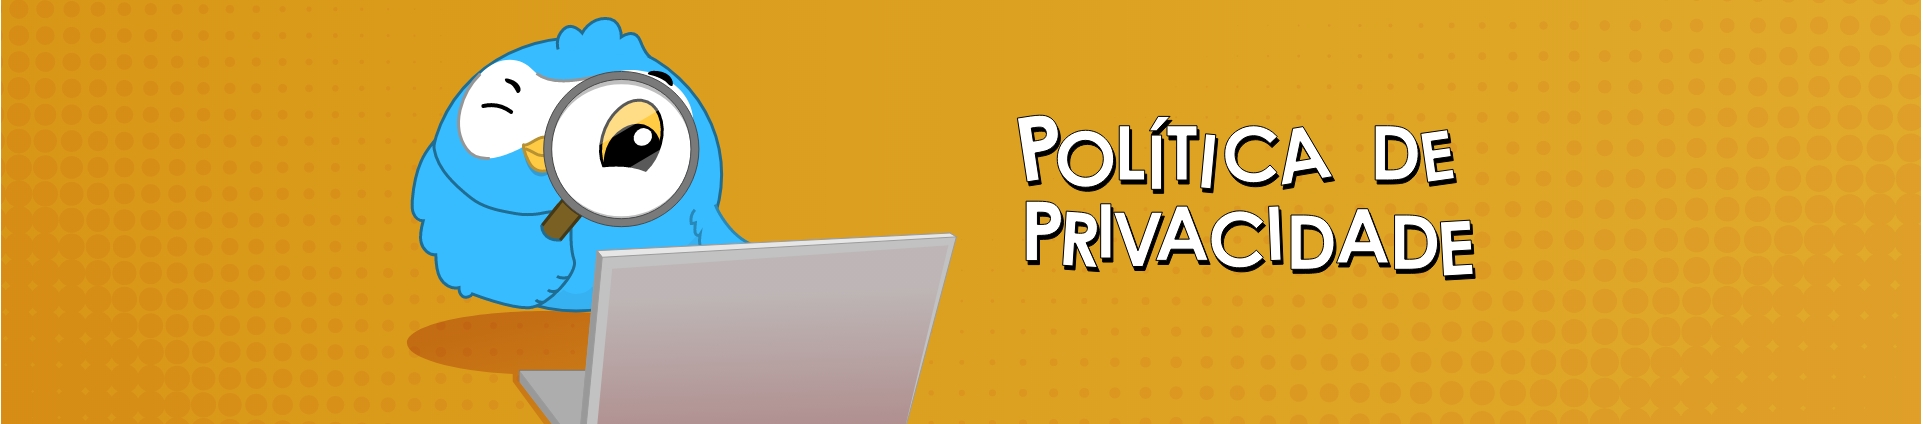 Imagem com Título Política de Privacidade